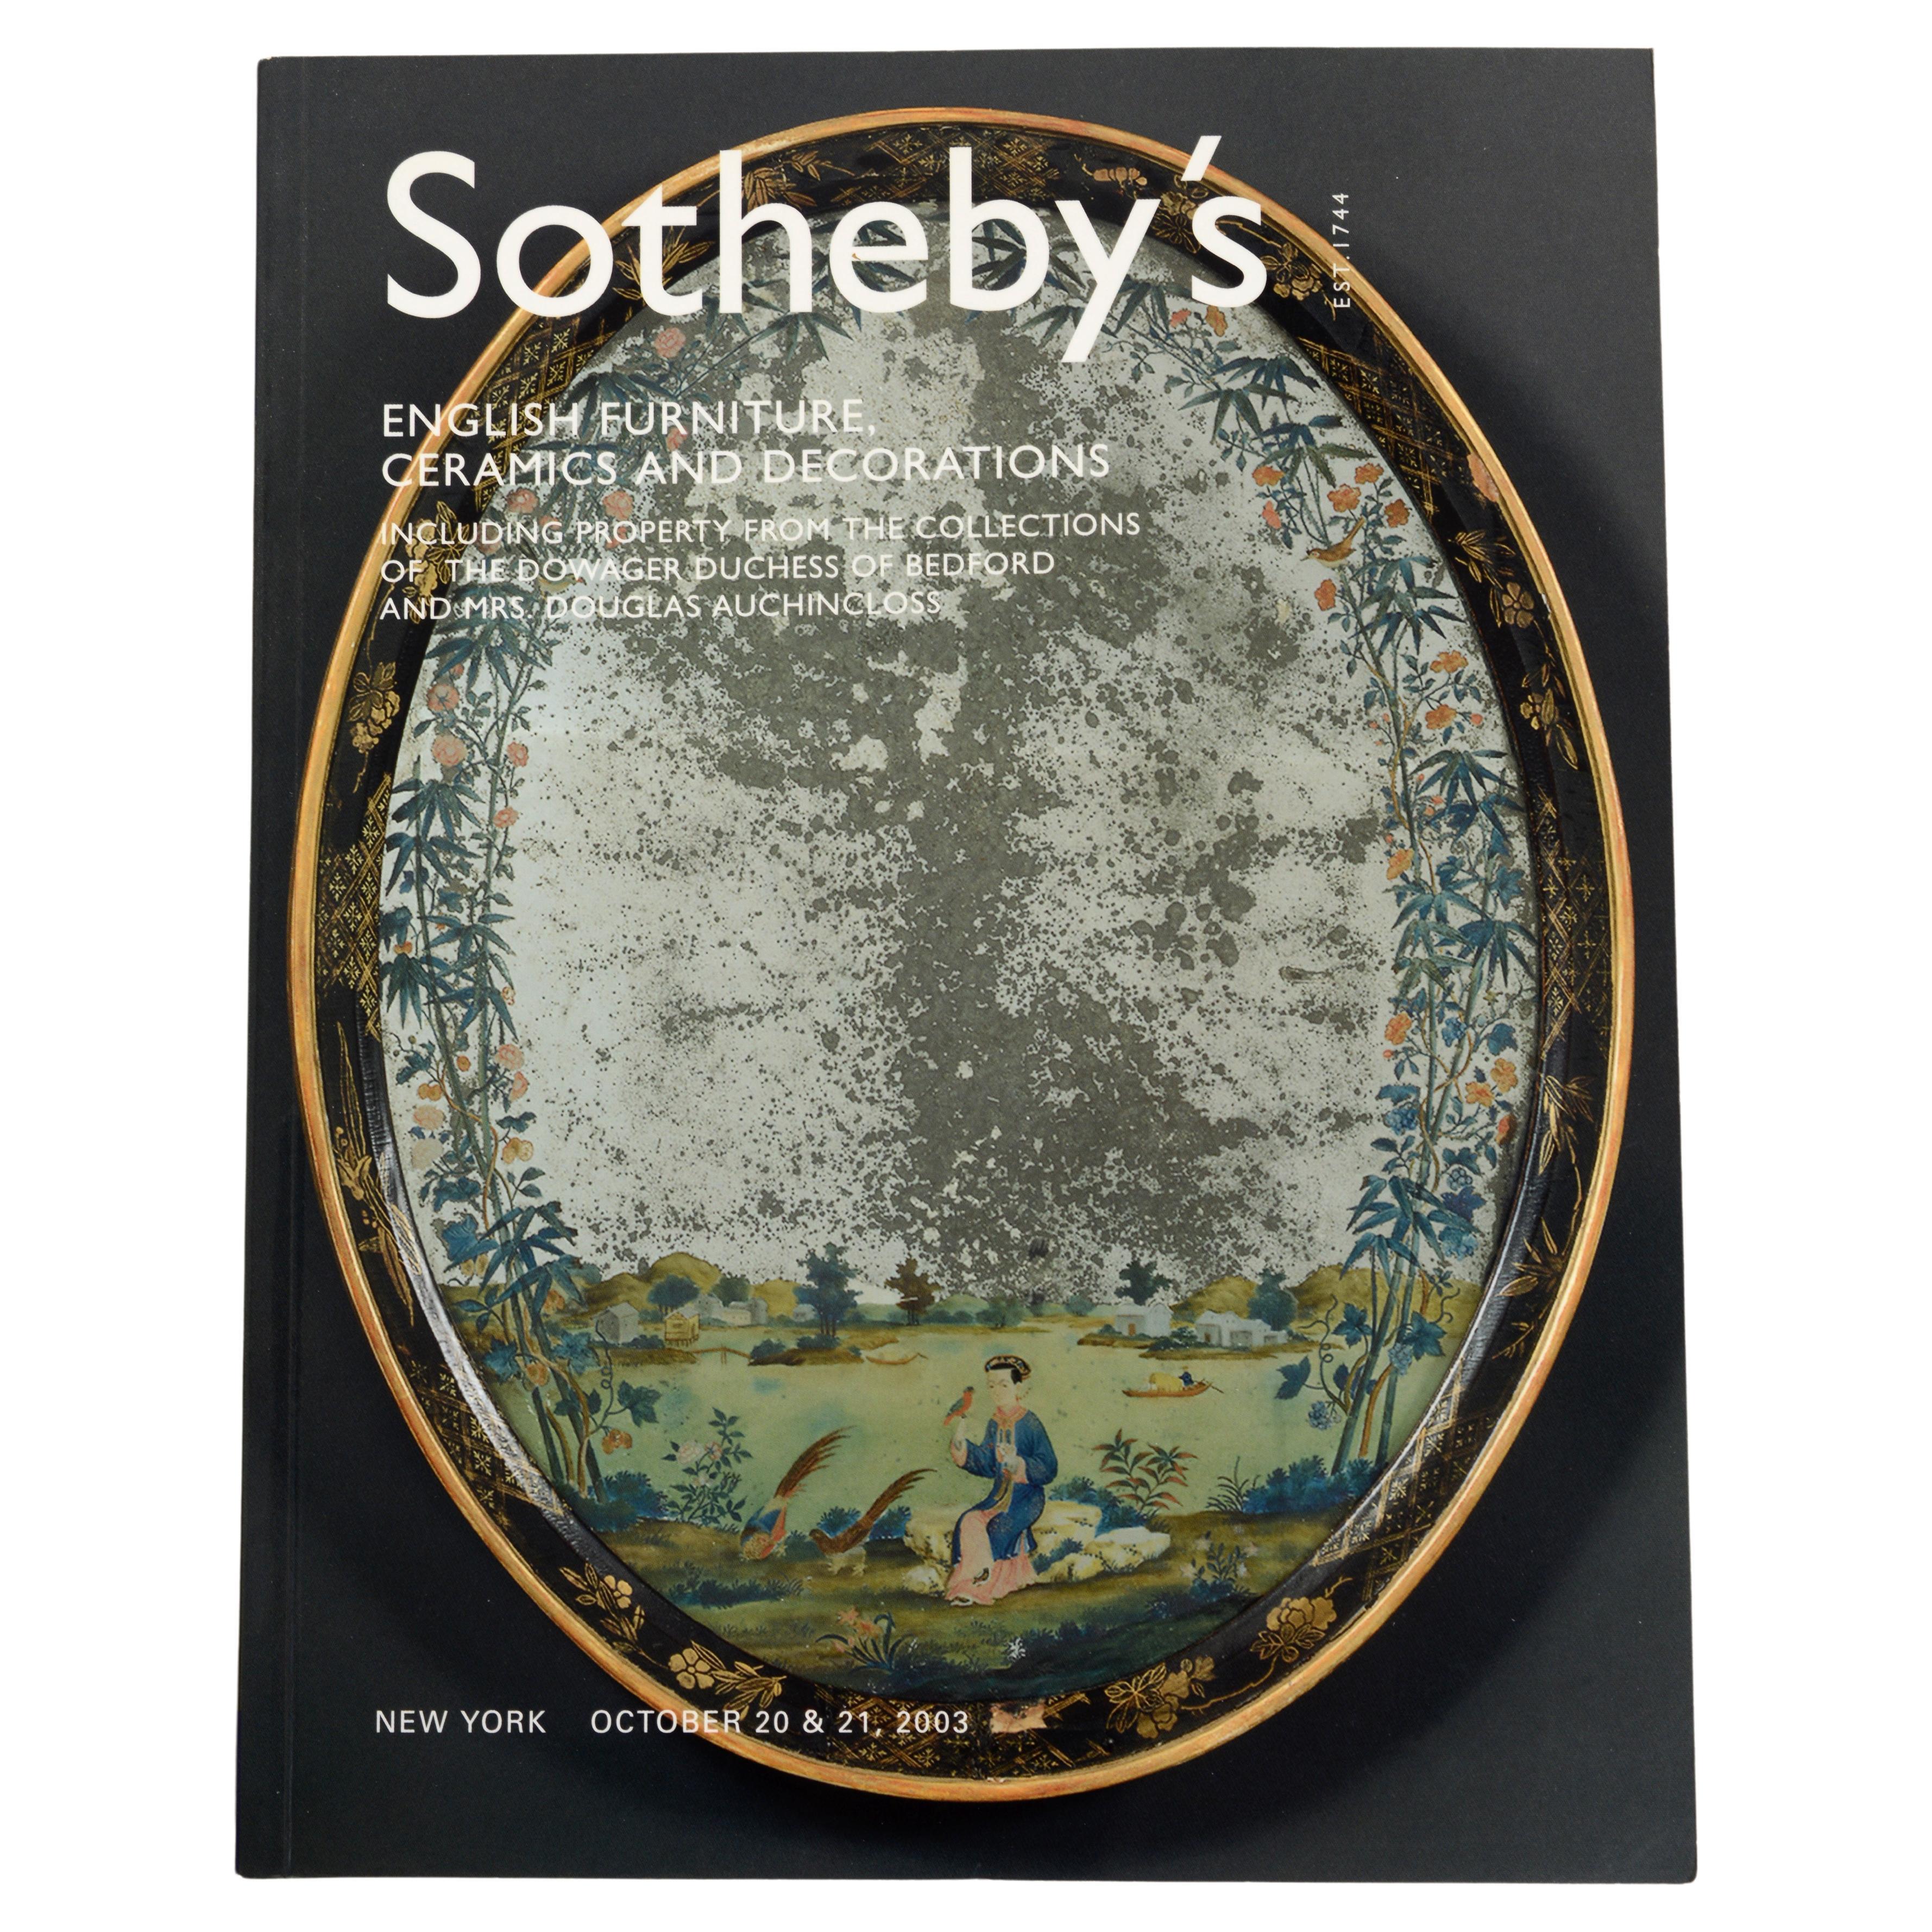 Sotheby's, Englische Möbel, Keramik und Dekoration: Kollektionen verschiedener Besitzer